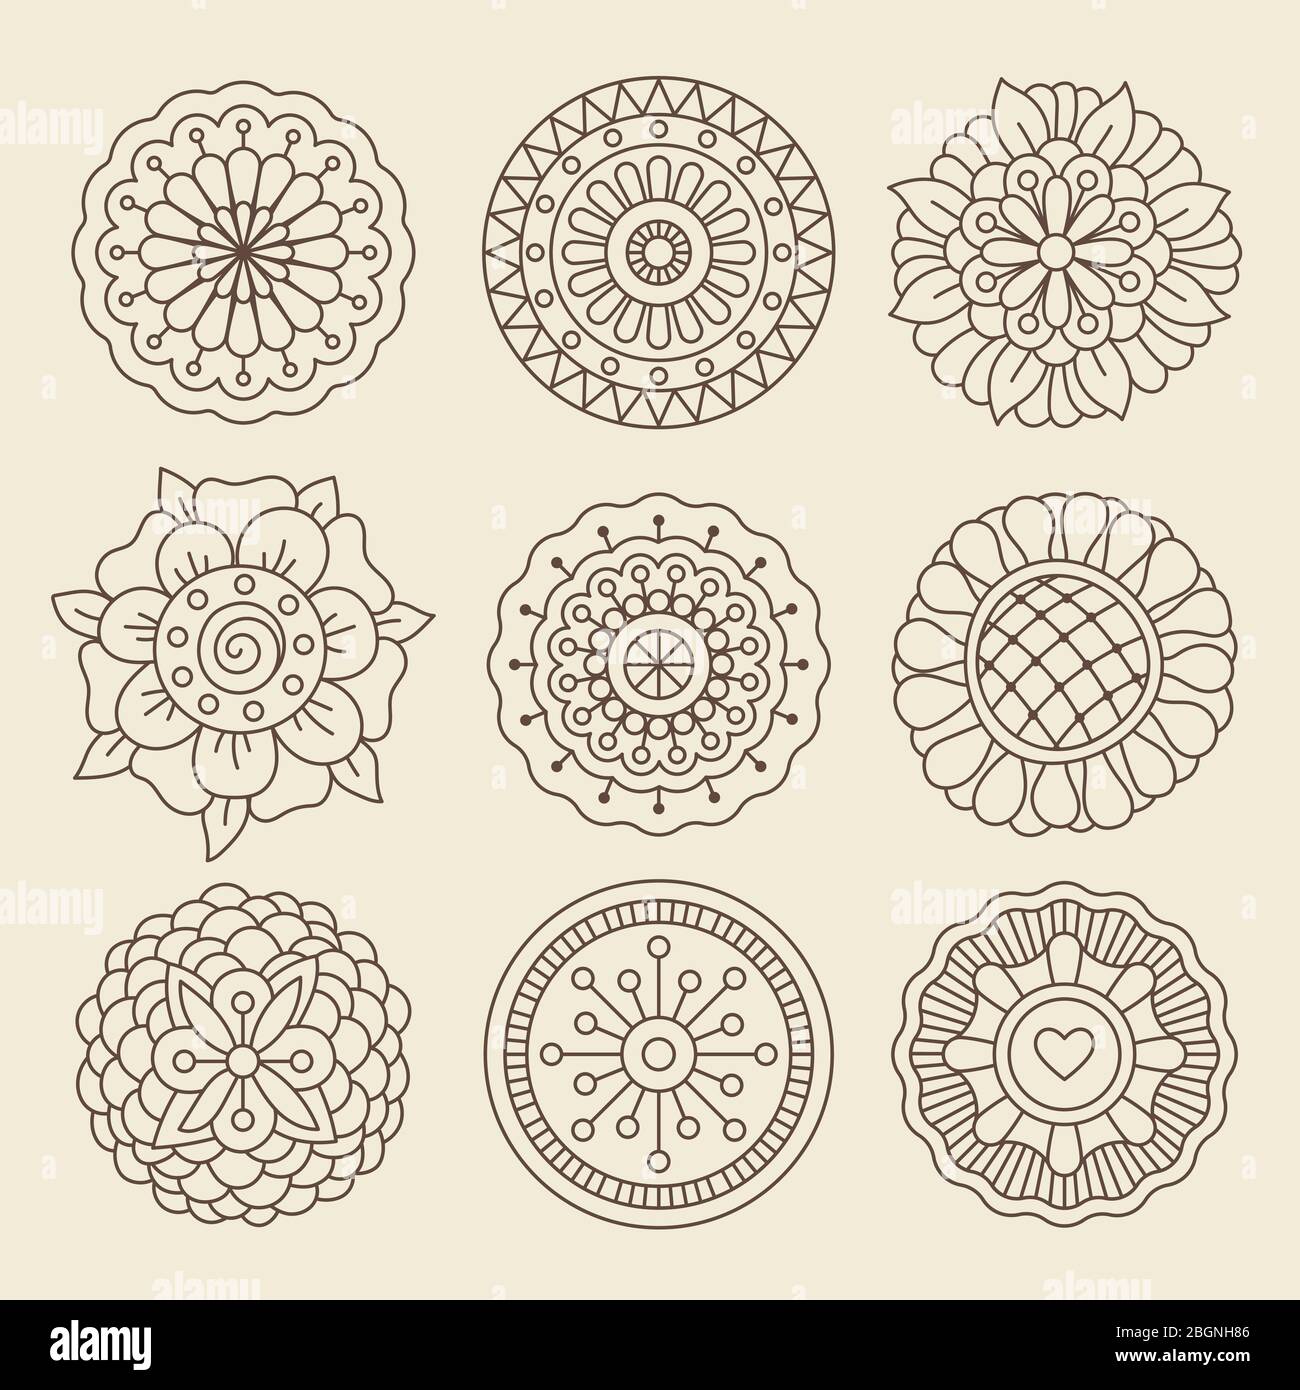 Vektor-Blumenset im marokkanischen Design. Grafische Sammlung mit mehndi indischen Henna Tattoo Blumen Stock Vektor